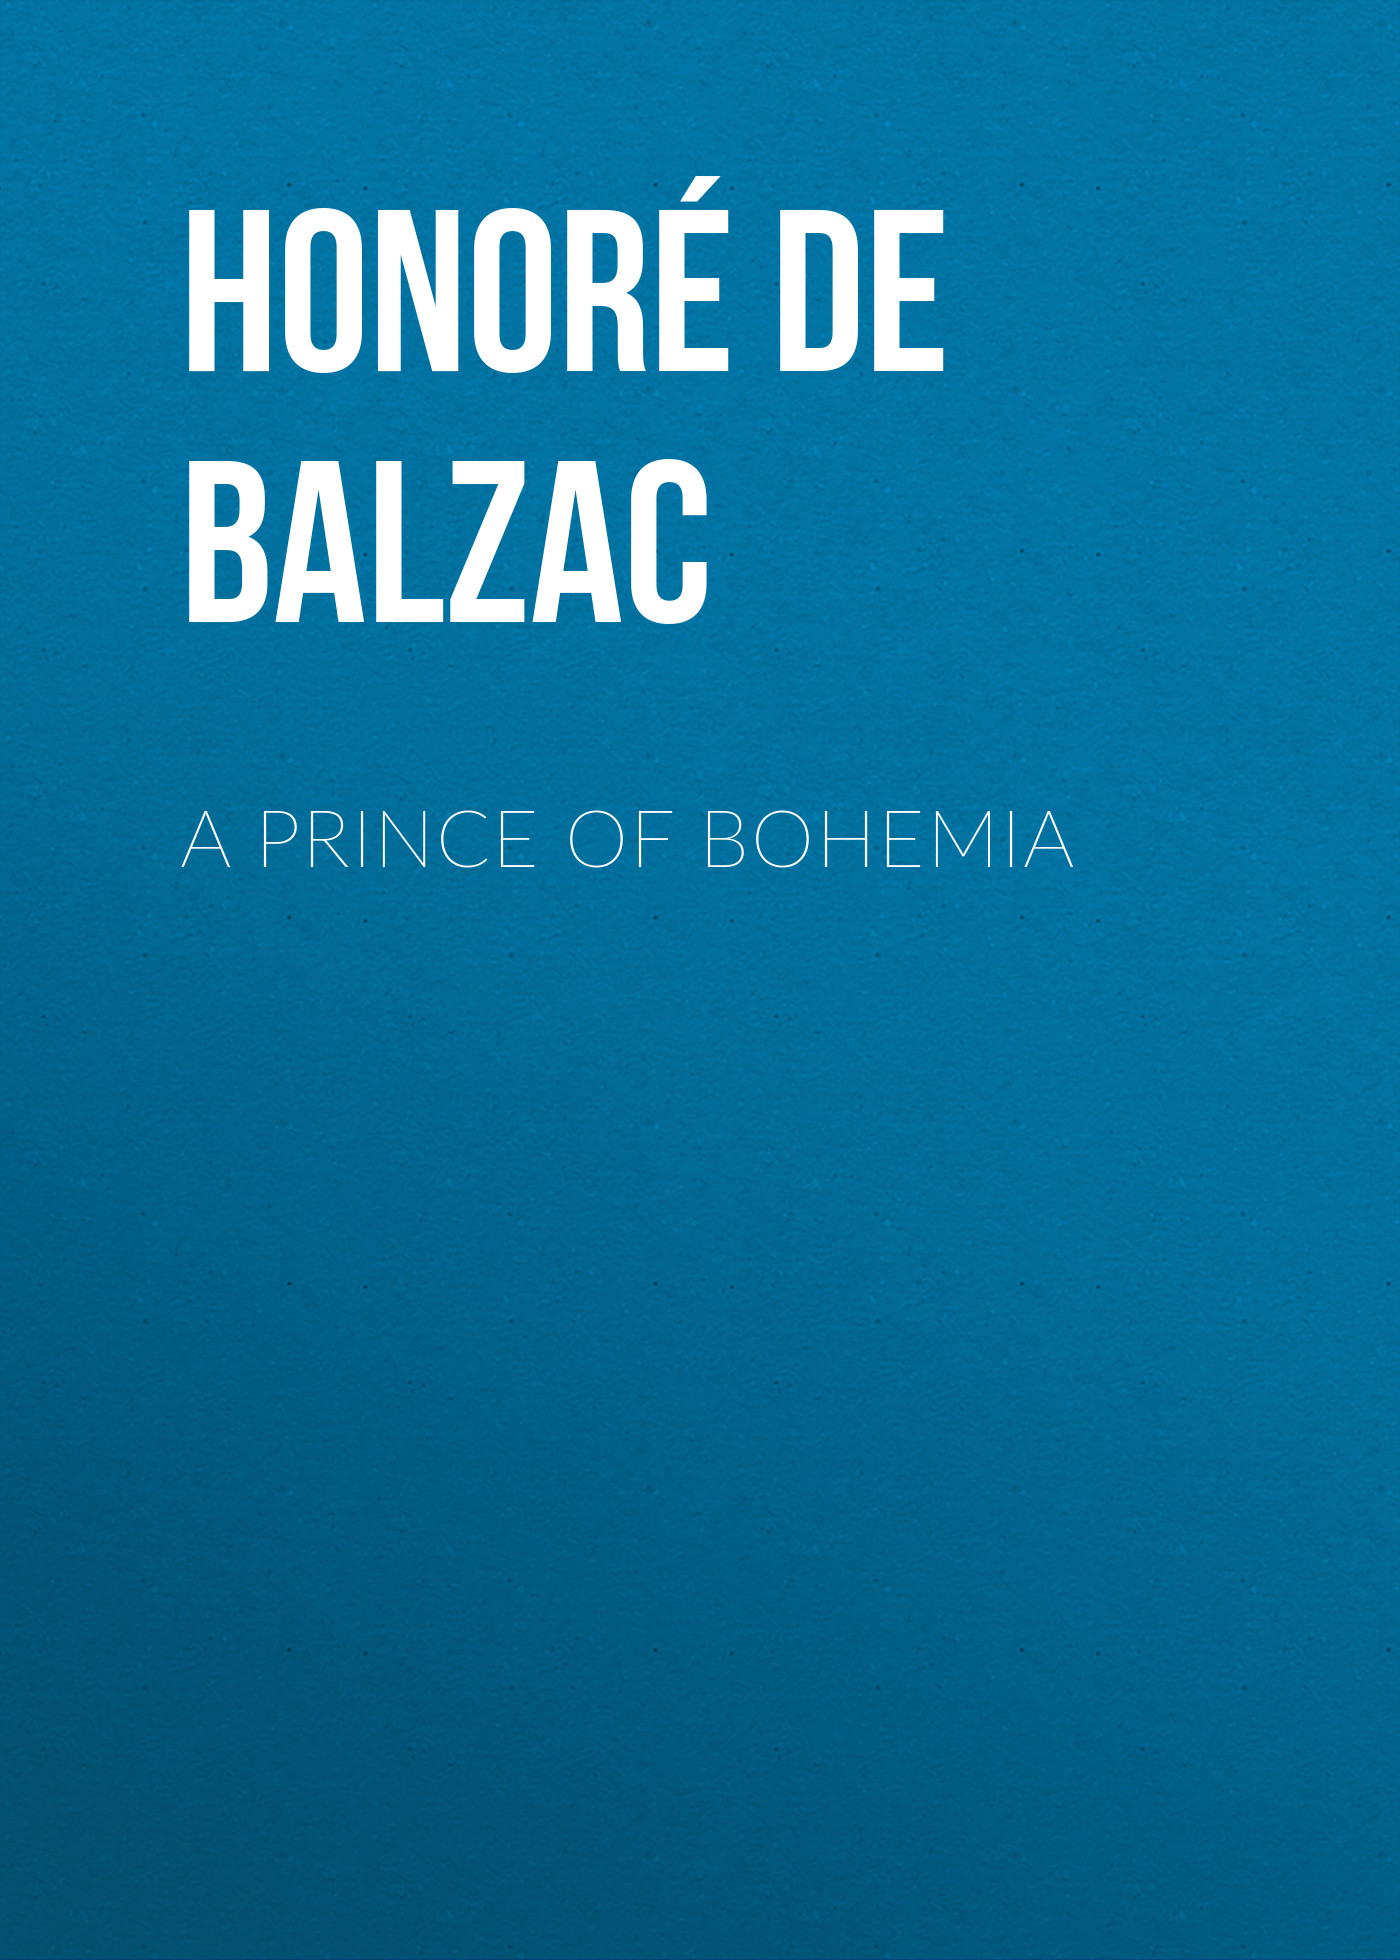 Книга A Prince of Bohemia из серии , созданная Honoré Balzac, может относится к жанру Литература 19 века, Зарубежная старинная литература, Зарубежная классика. Стоимость электронной книги A Prince of Bohemia с идентификатором 25020147 составляет 0 руб.